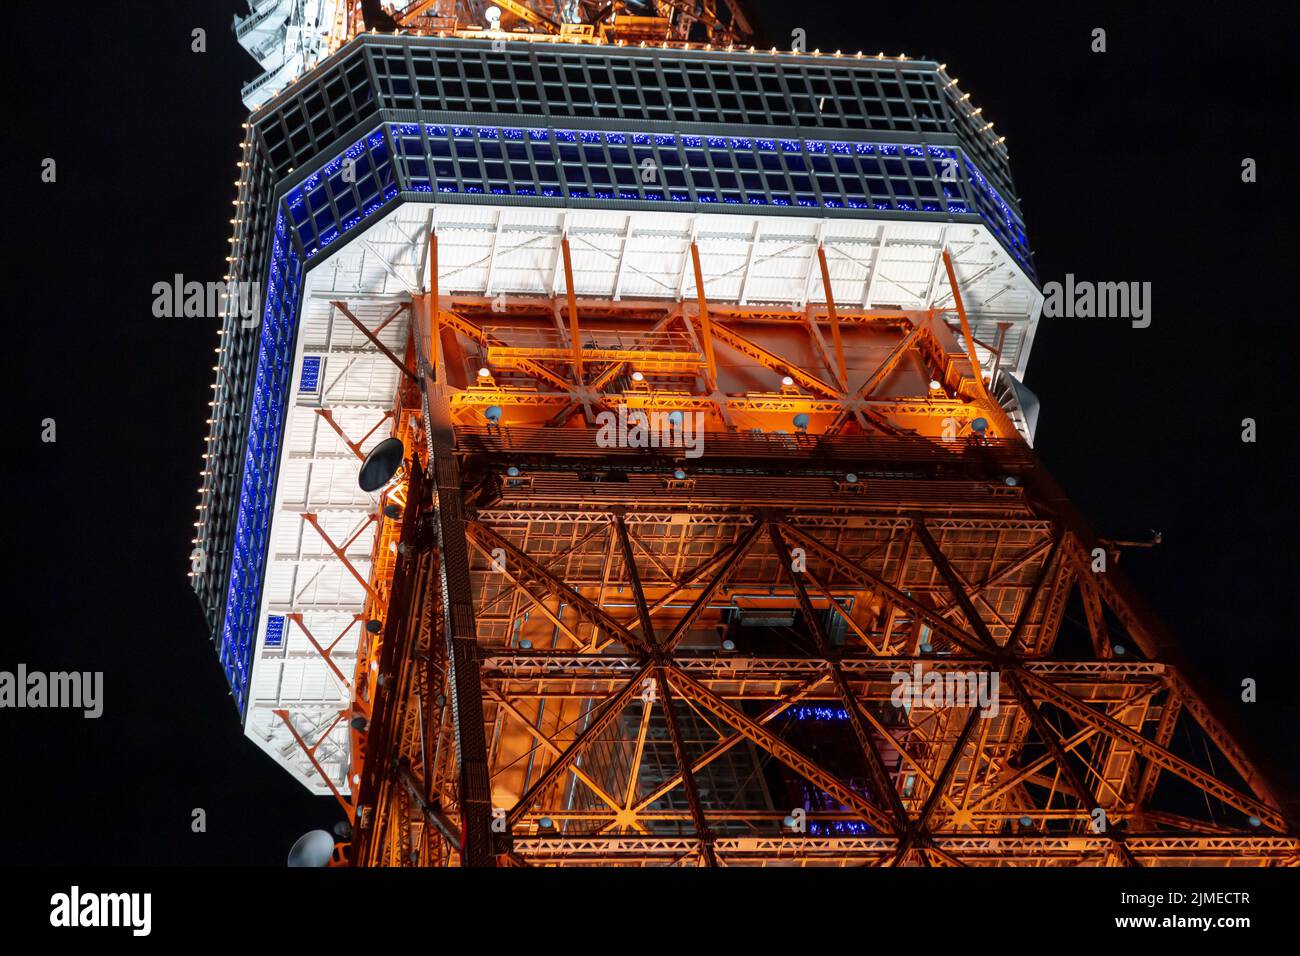 La luce e l'illuminazione della Torre di Tokyo sono bellissime da vicino, scattate di notte Foto Stock